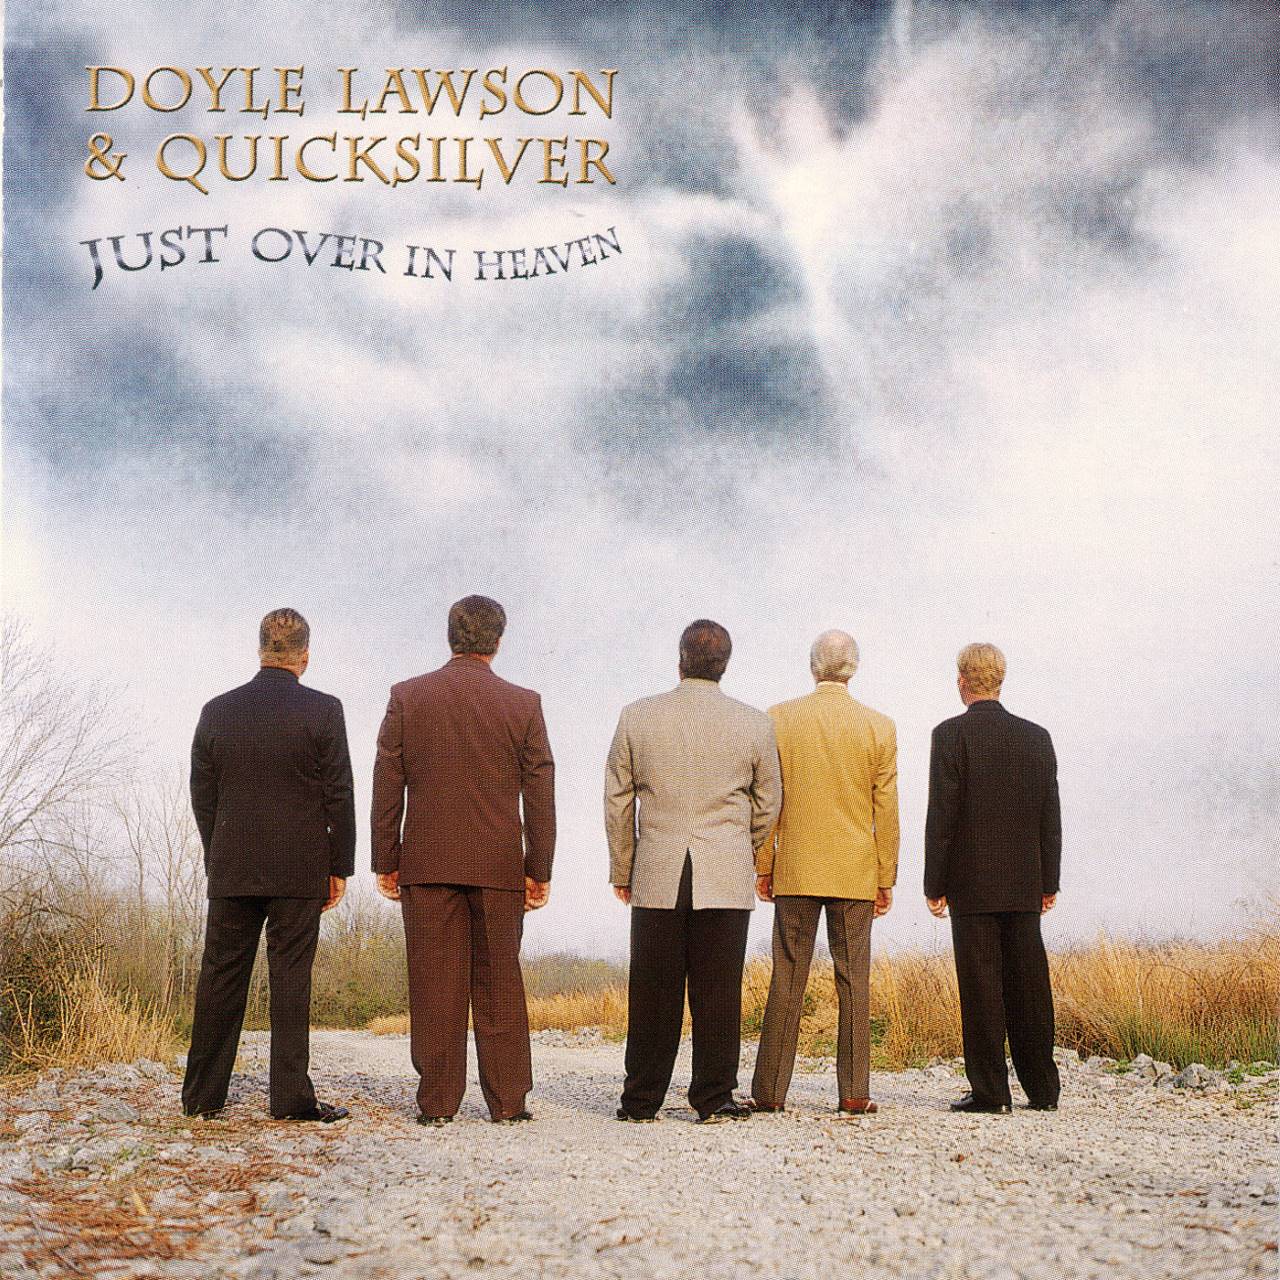 Doyle Lawson & Quicksilver - Just Over In Heaven cover album